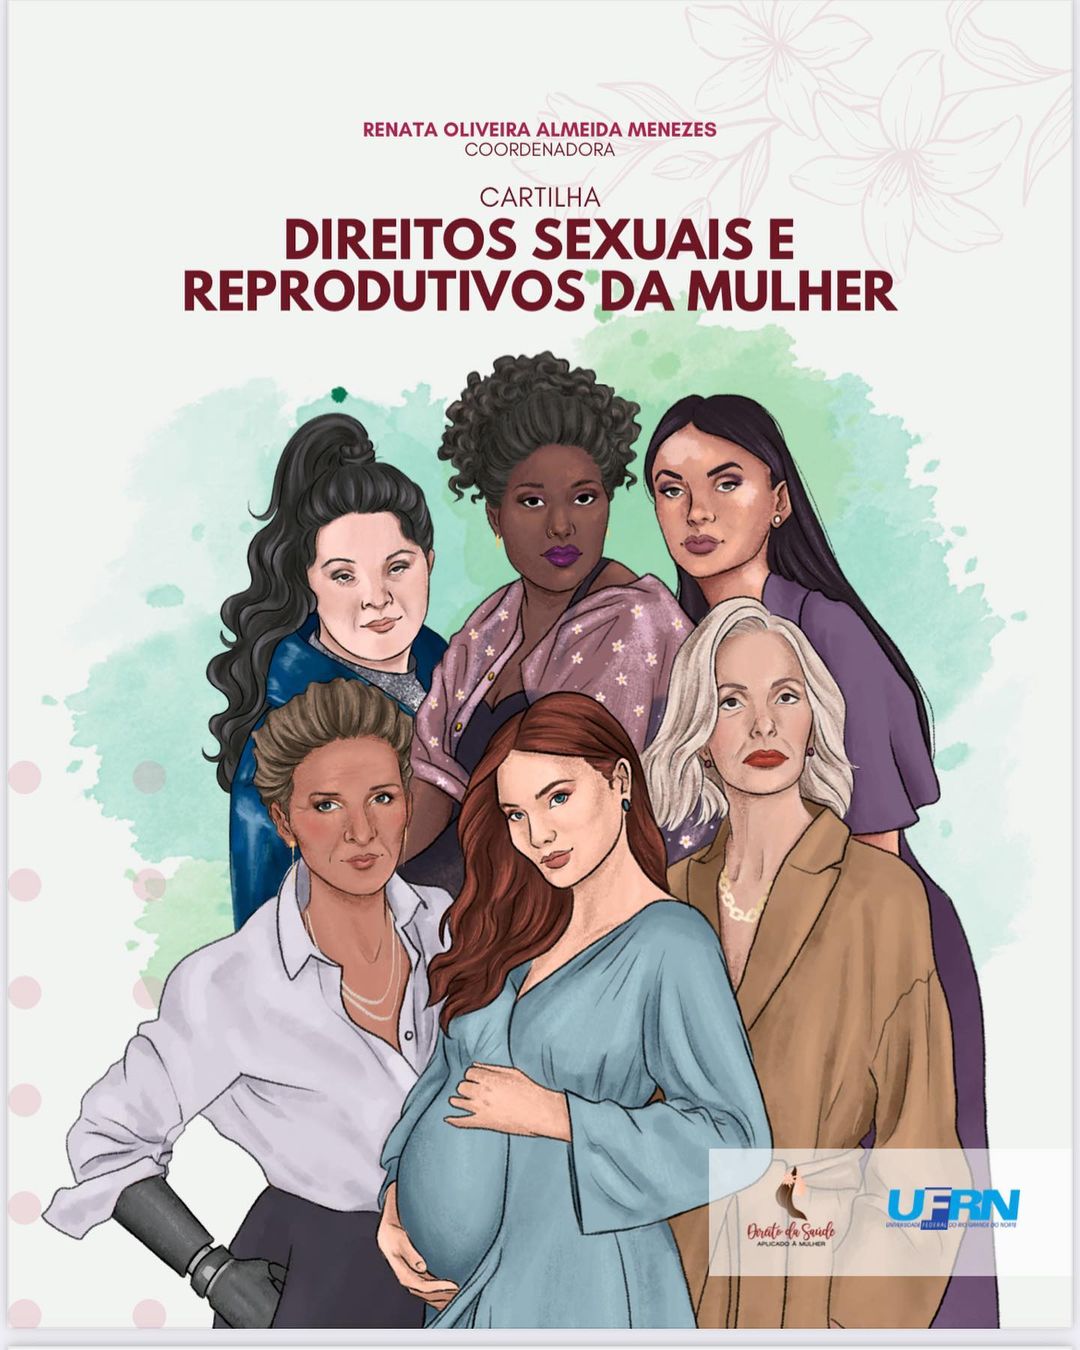 Projeto do Ceres lança cartilha de direitos sexuais e reprodutivos da mulher